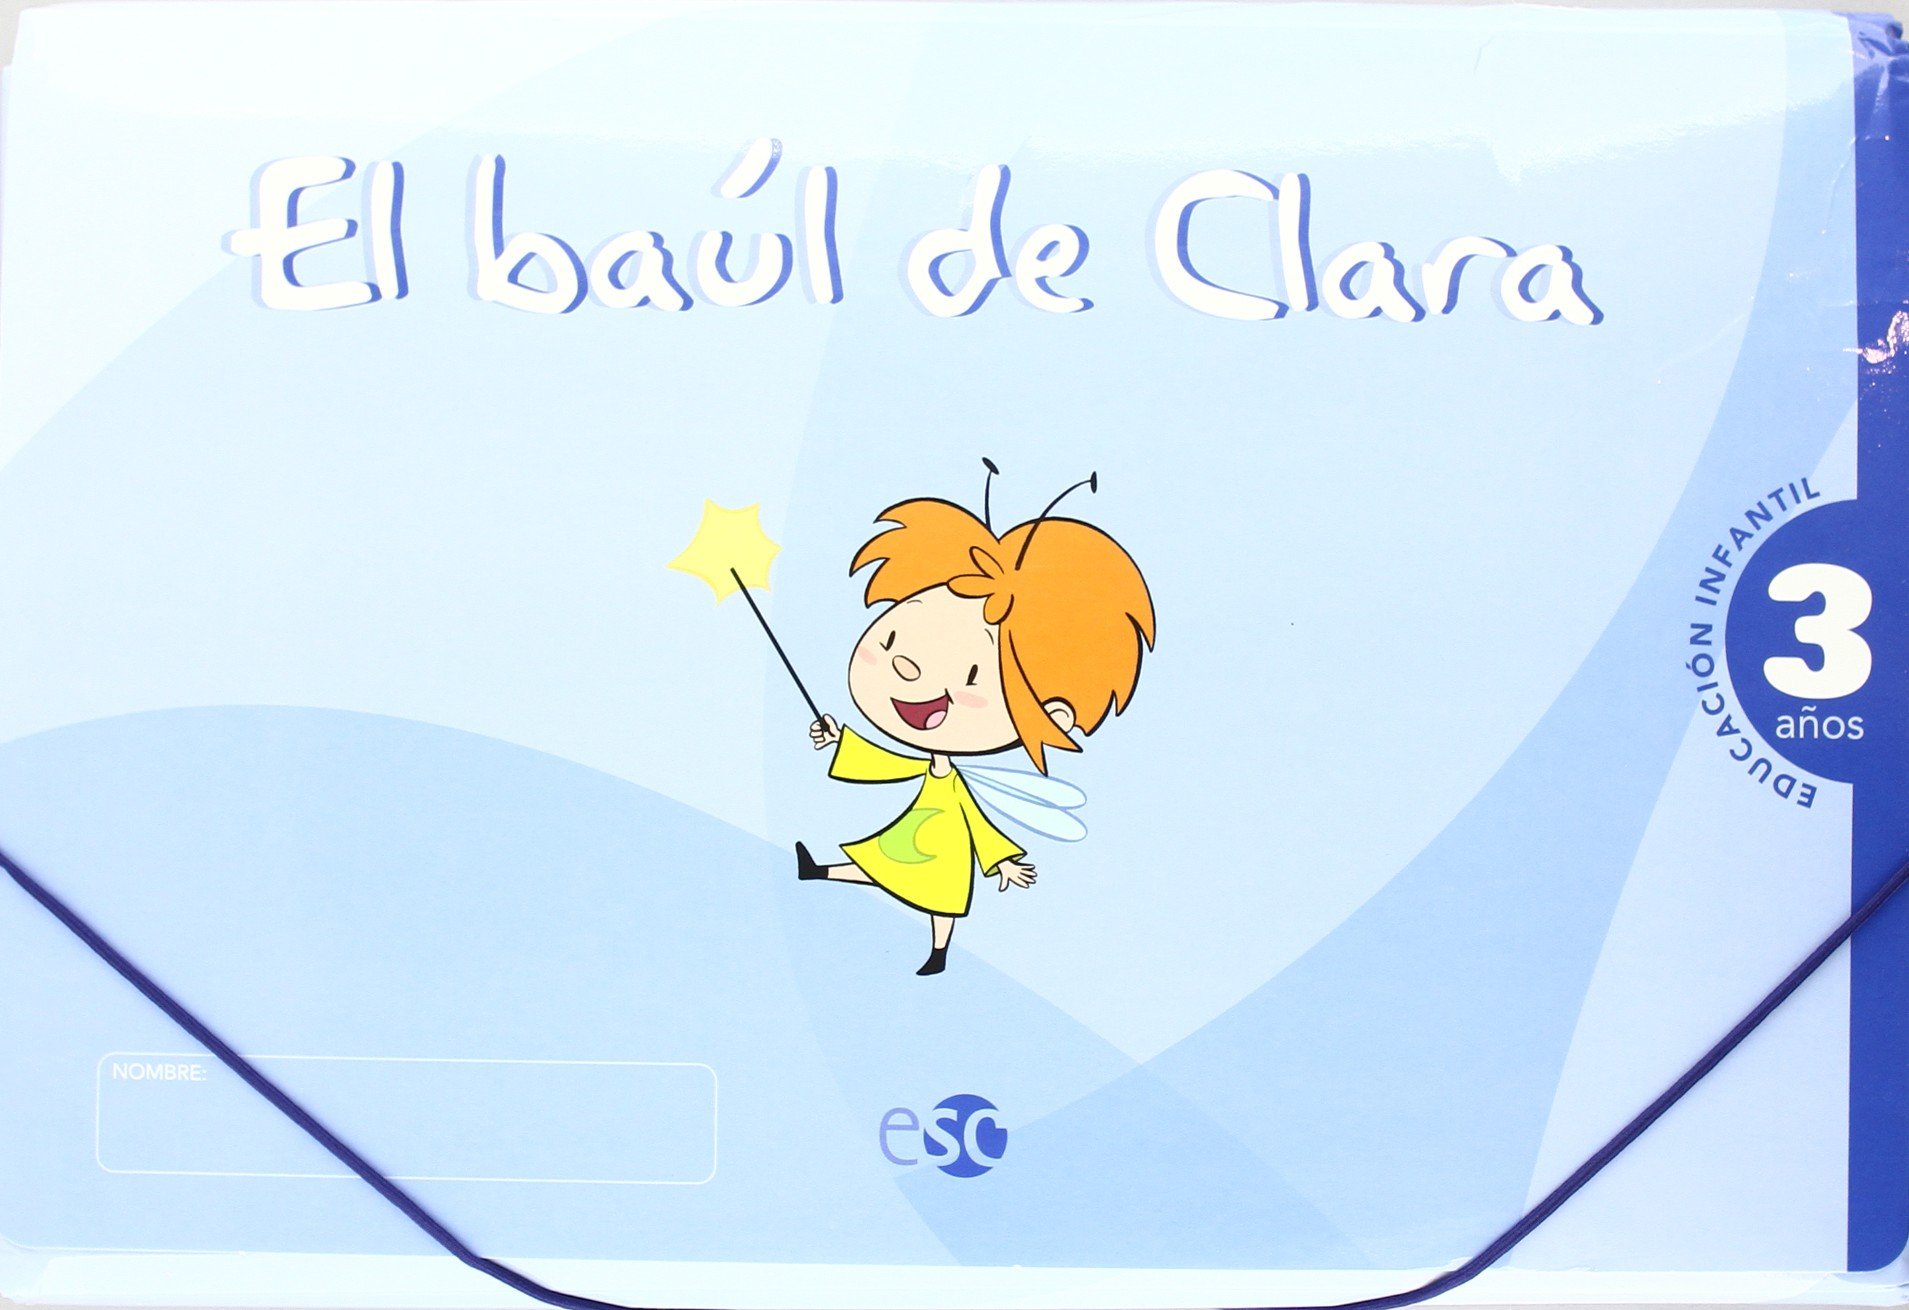 El baúl de Clara 3 años